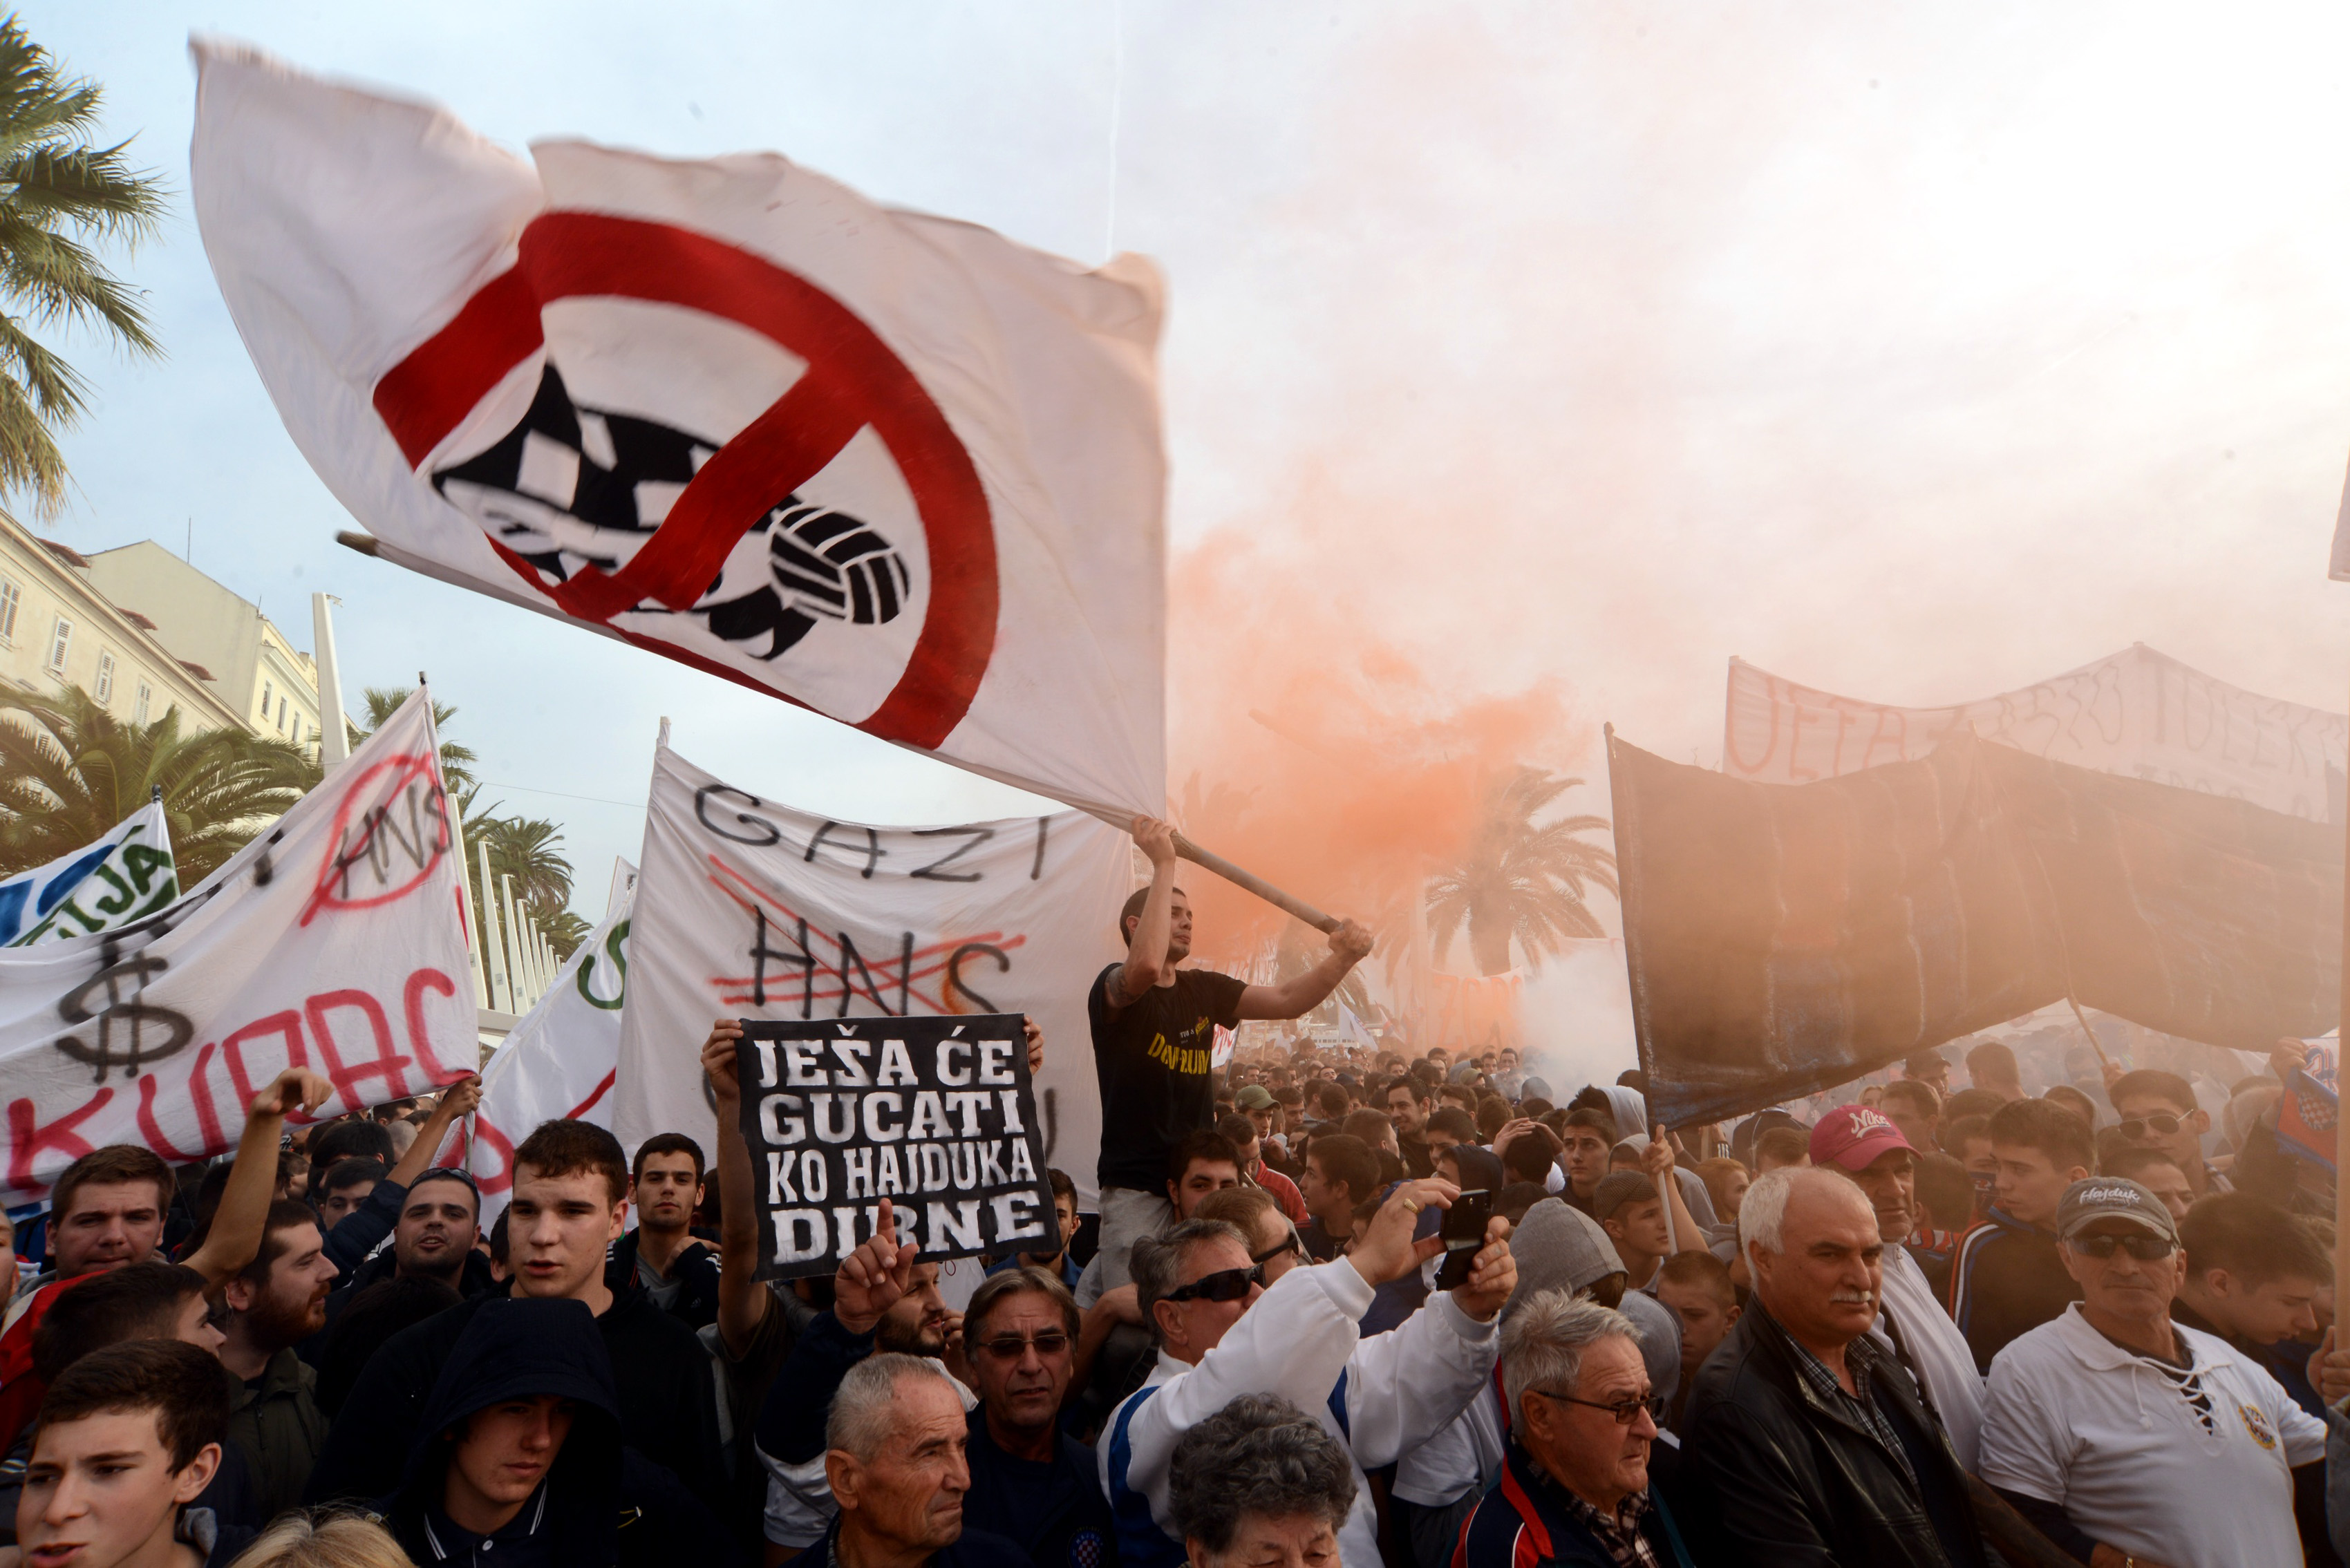 Horvát szurkolók tízezrei bojkottálják a csapatot, börtönbe küldenék Modrićot és a korrupt futballelitet